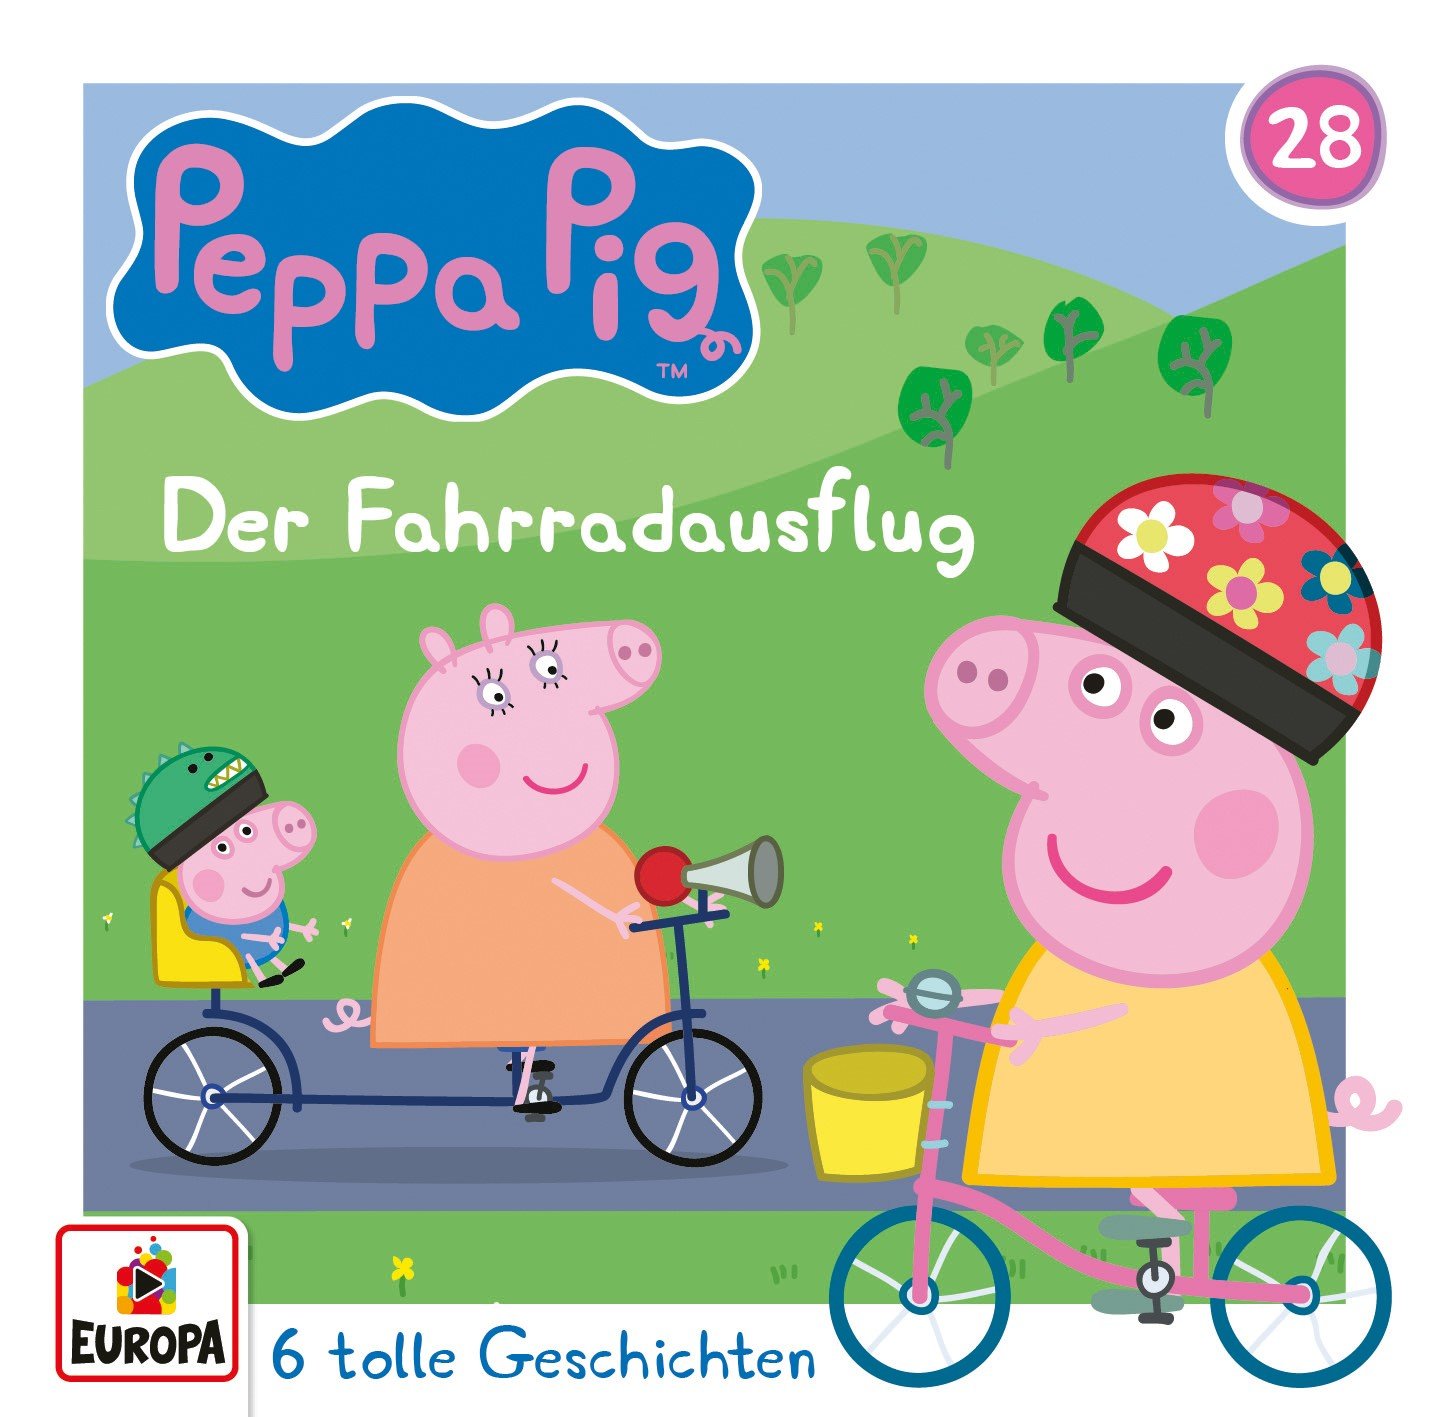 Neue Peppa Pig Hörspiele!